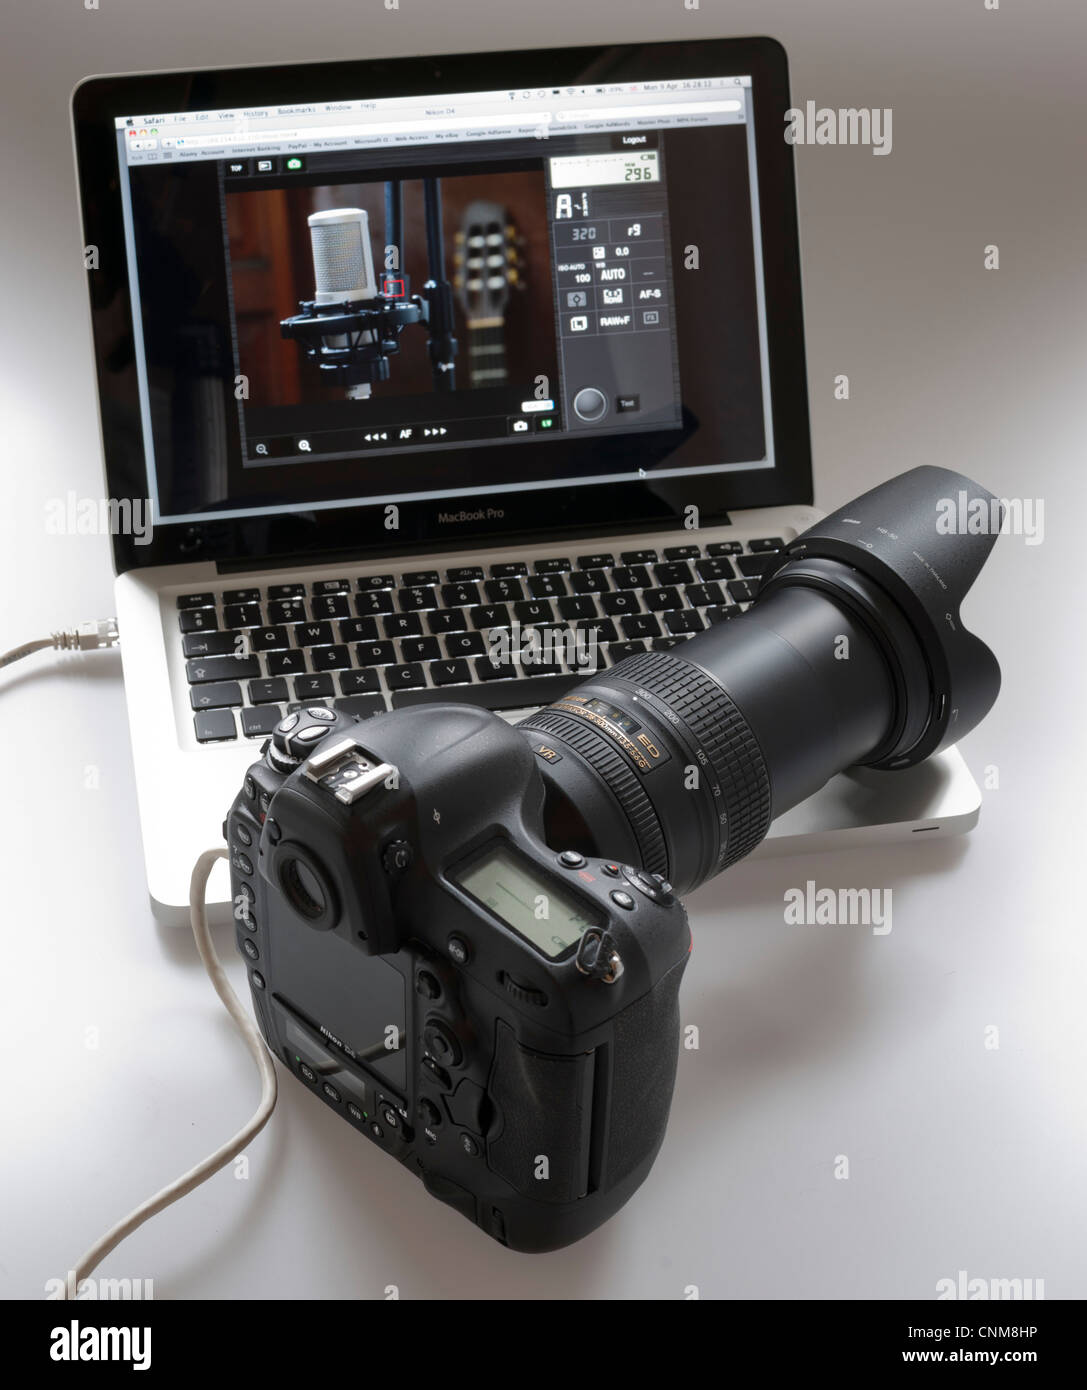 Le matériel photographique - Nikon D4 connecté au MacBook Pro par câble Ethernet. Prise de vue avec connexion via interface web HTML. Banque D'Images